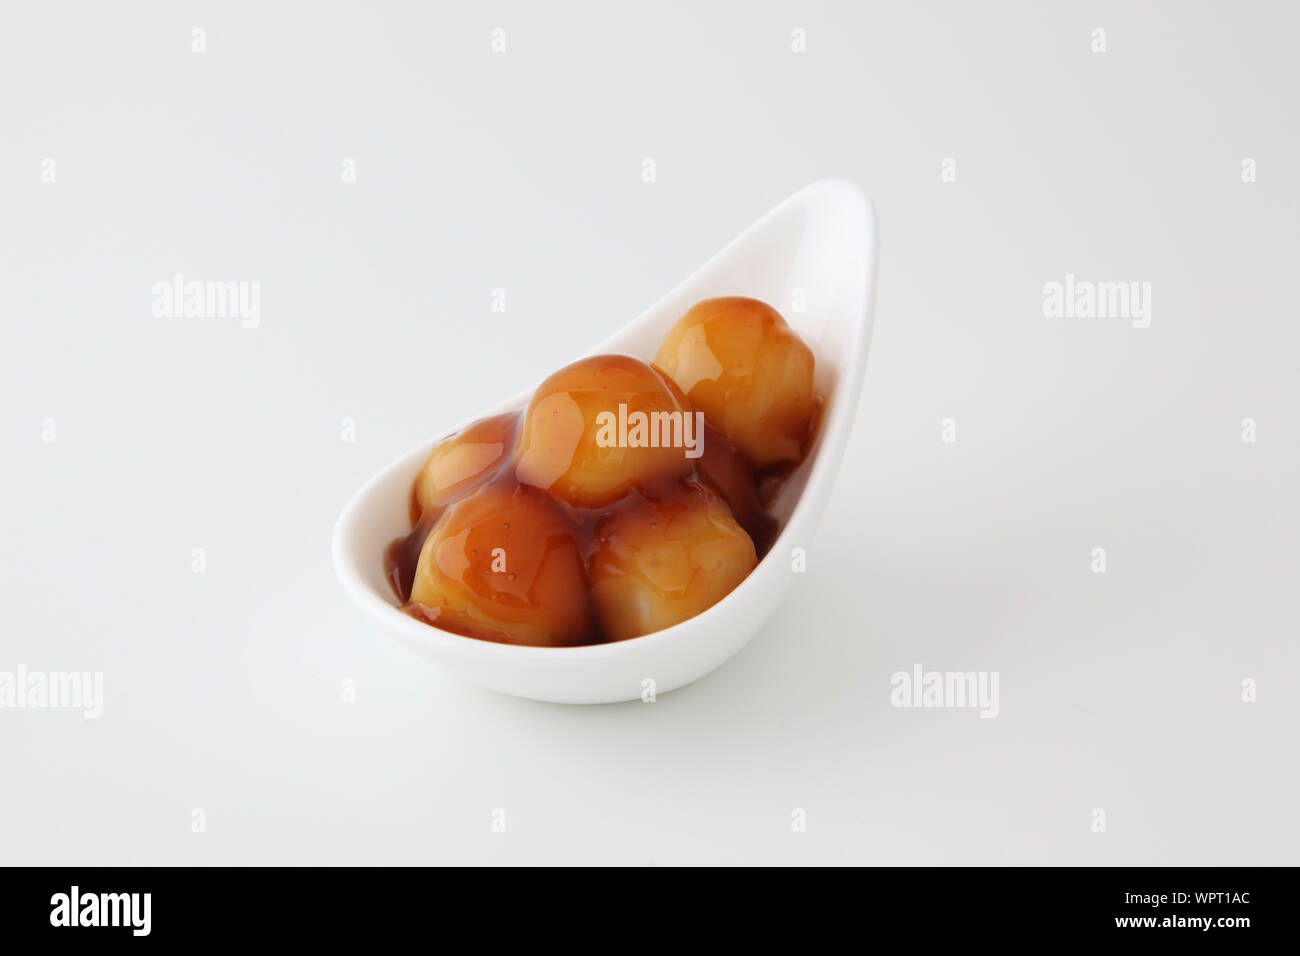 dango dumpling Japanese sweet dessert with rice on plate isolated on white background mitarashi Stock Photo